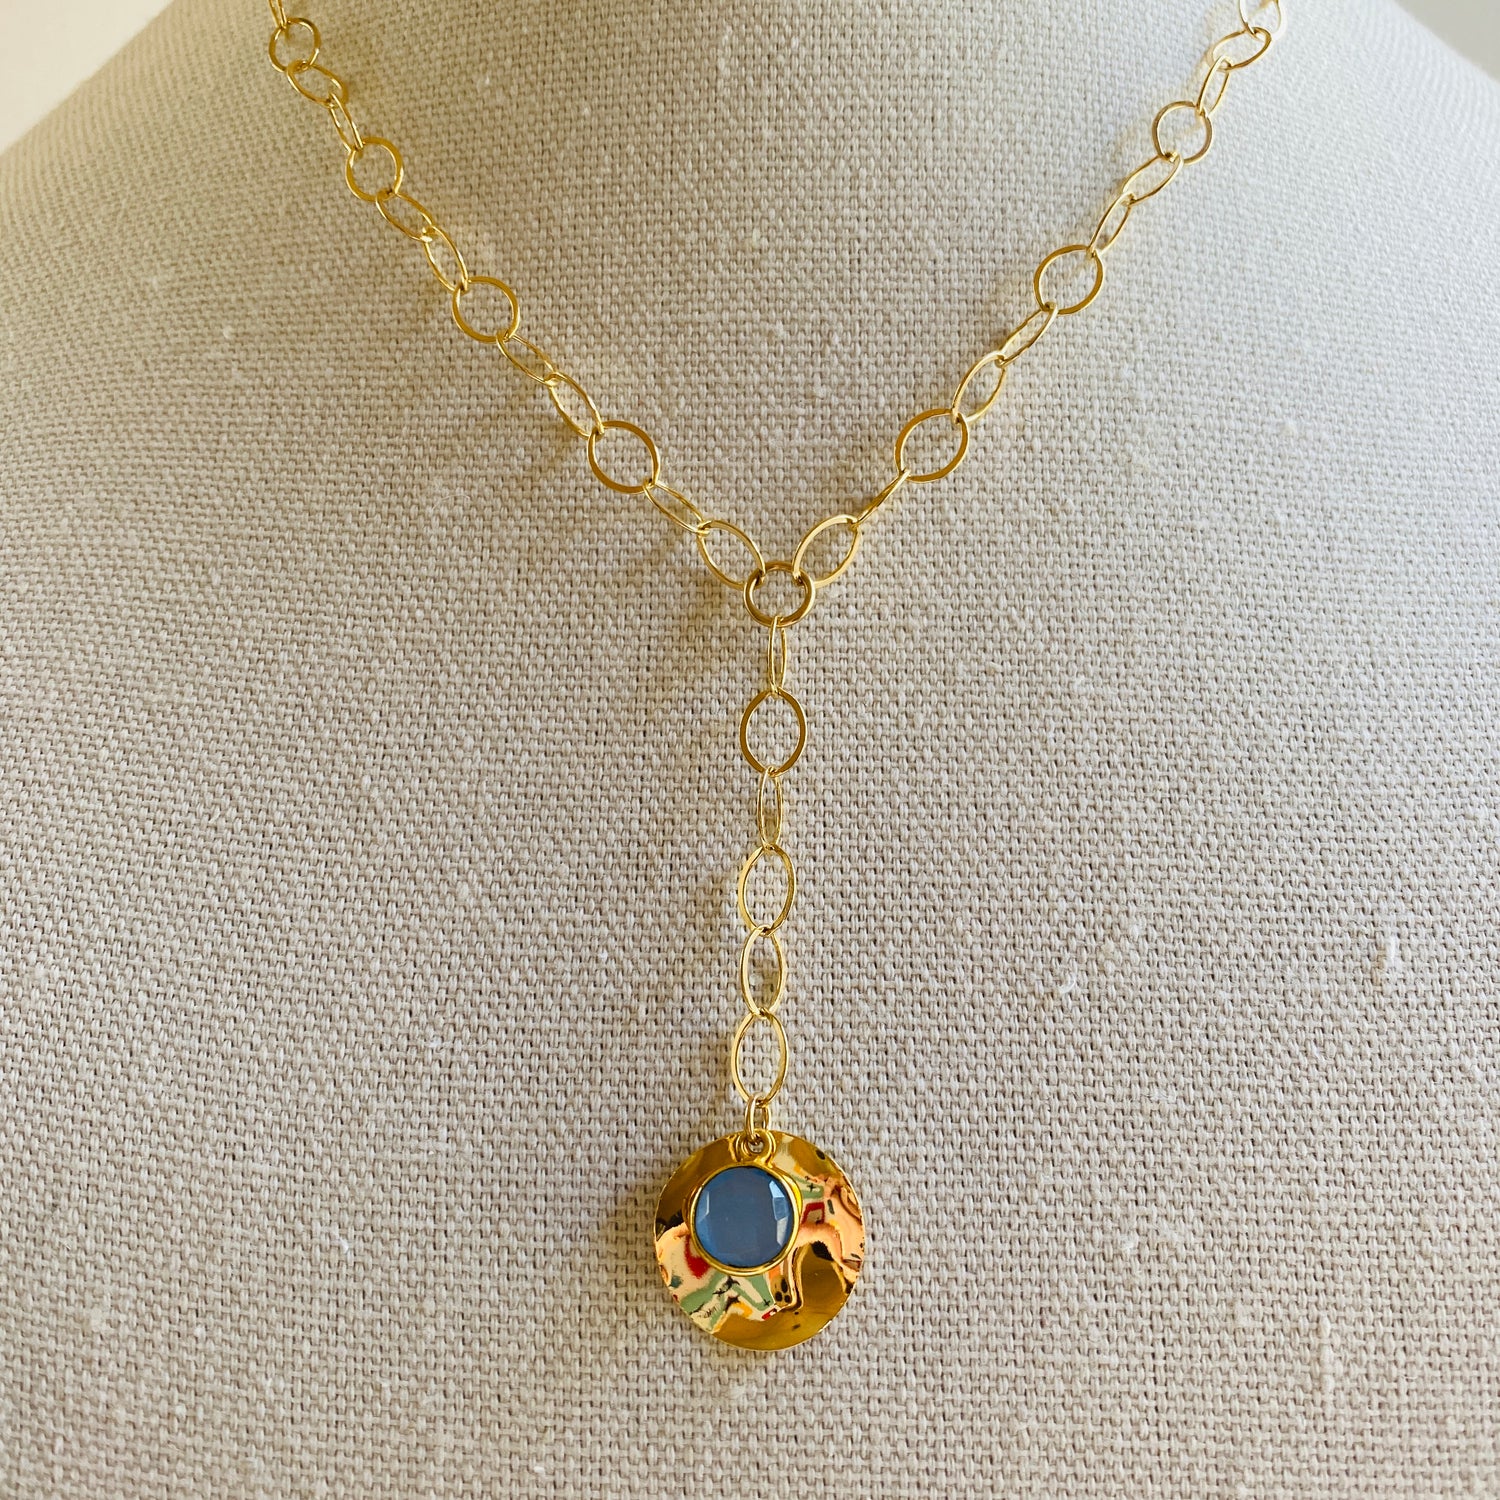 Gold, Lariat, Blue, Gem, Pendant, Chain, Necklace